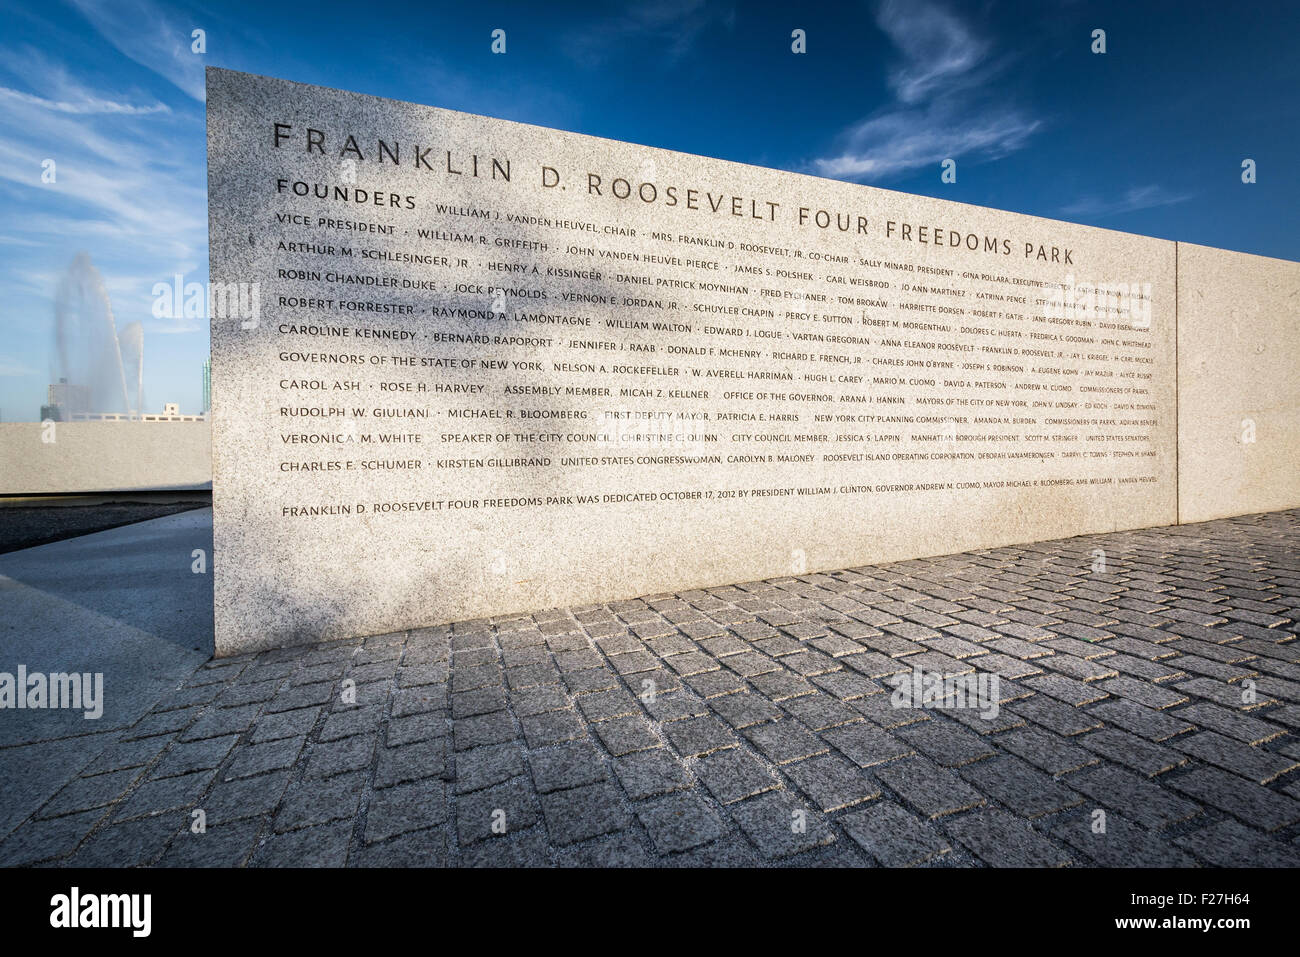 Parete di fondatori di Franklin D. Roosevelt quattro libertà Parco sulla isola di Roosevelt, Manhattan, New York. Foto Stock